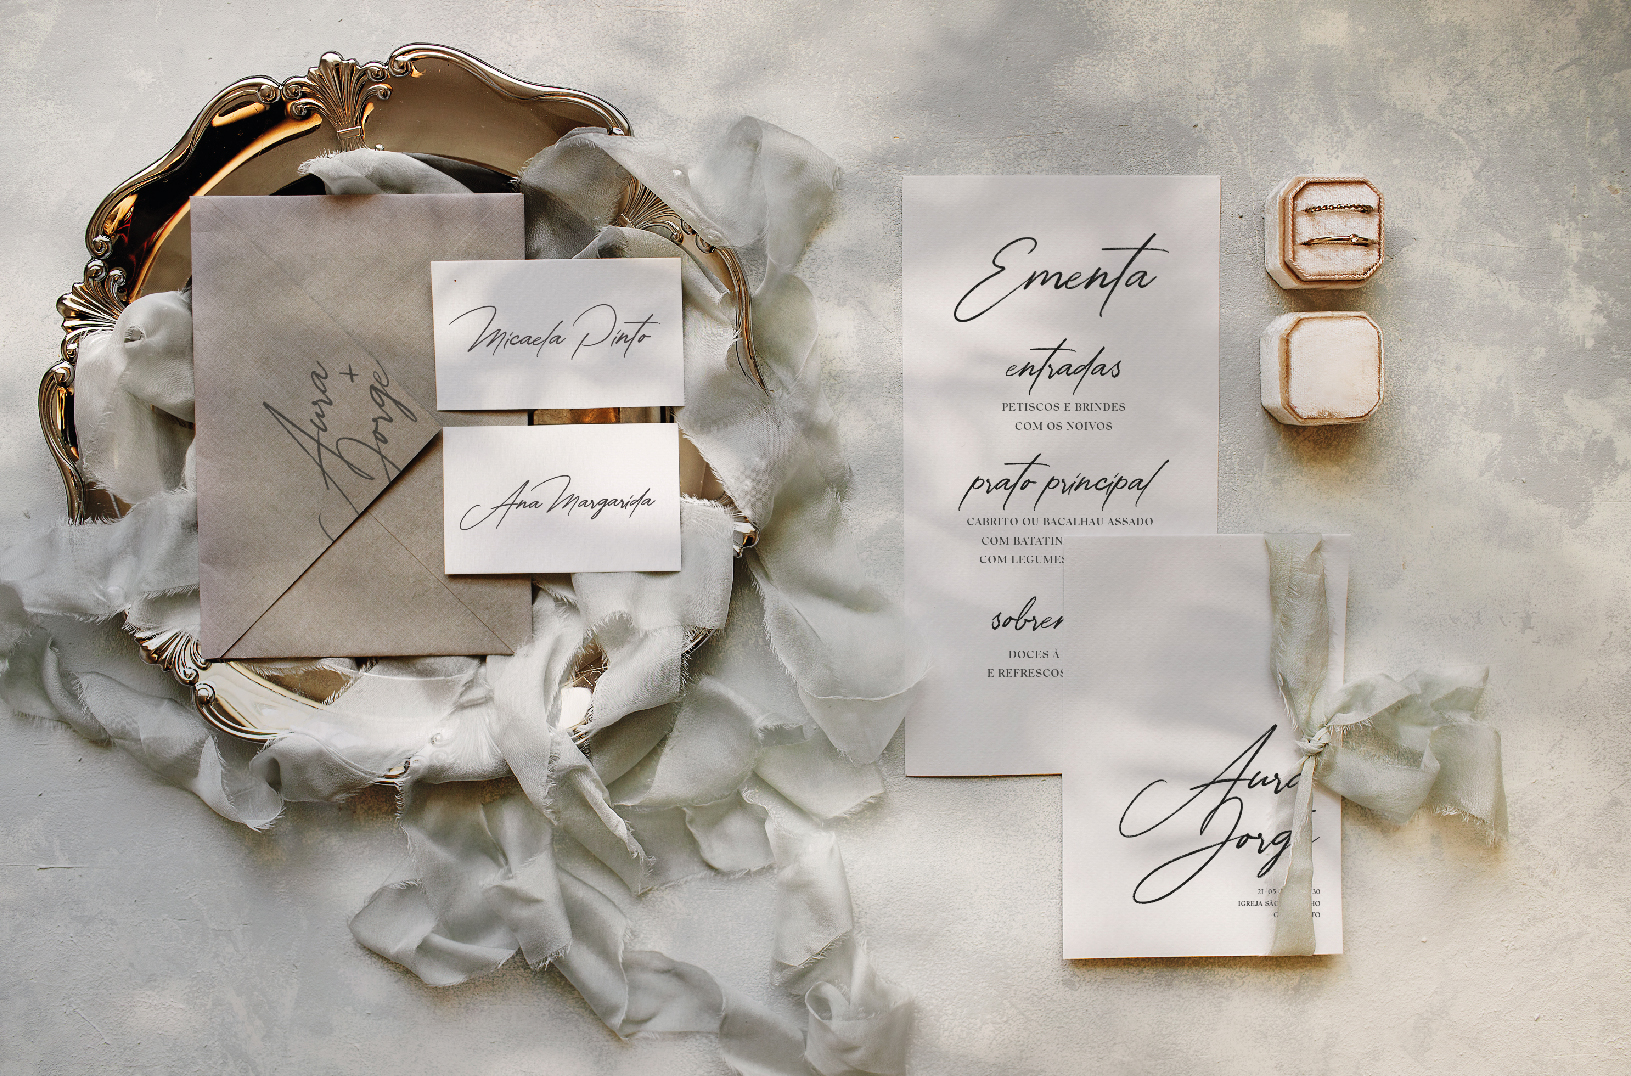 Convite de casamento de estilo tipográfico com um laço de linho bege, com um envelope cinza pousado numa bandeja dourada.